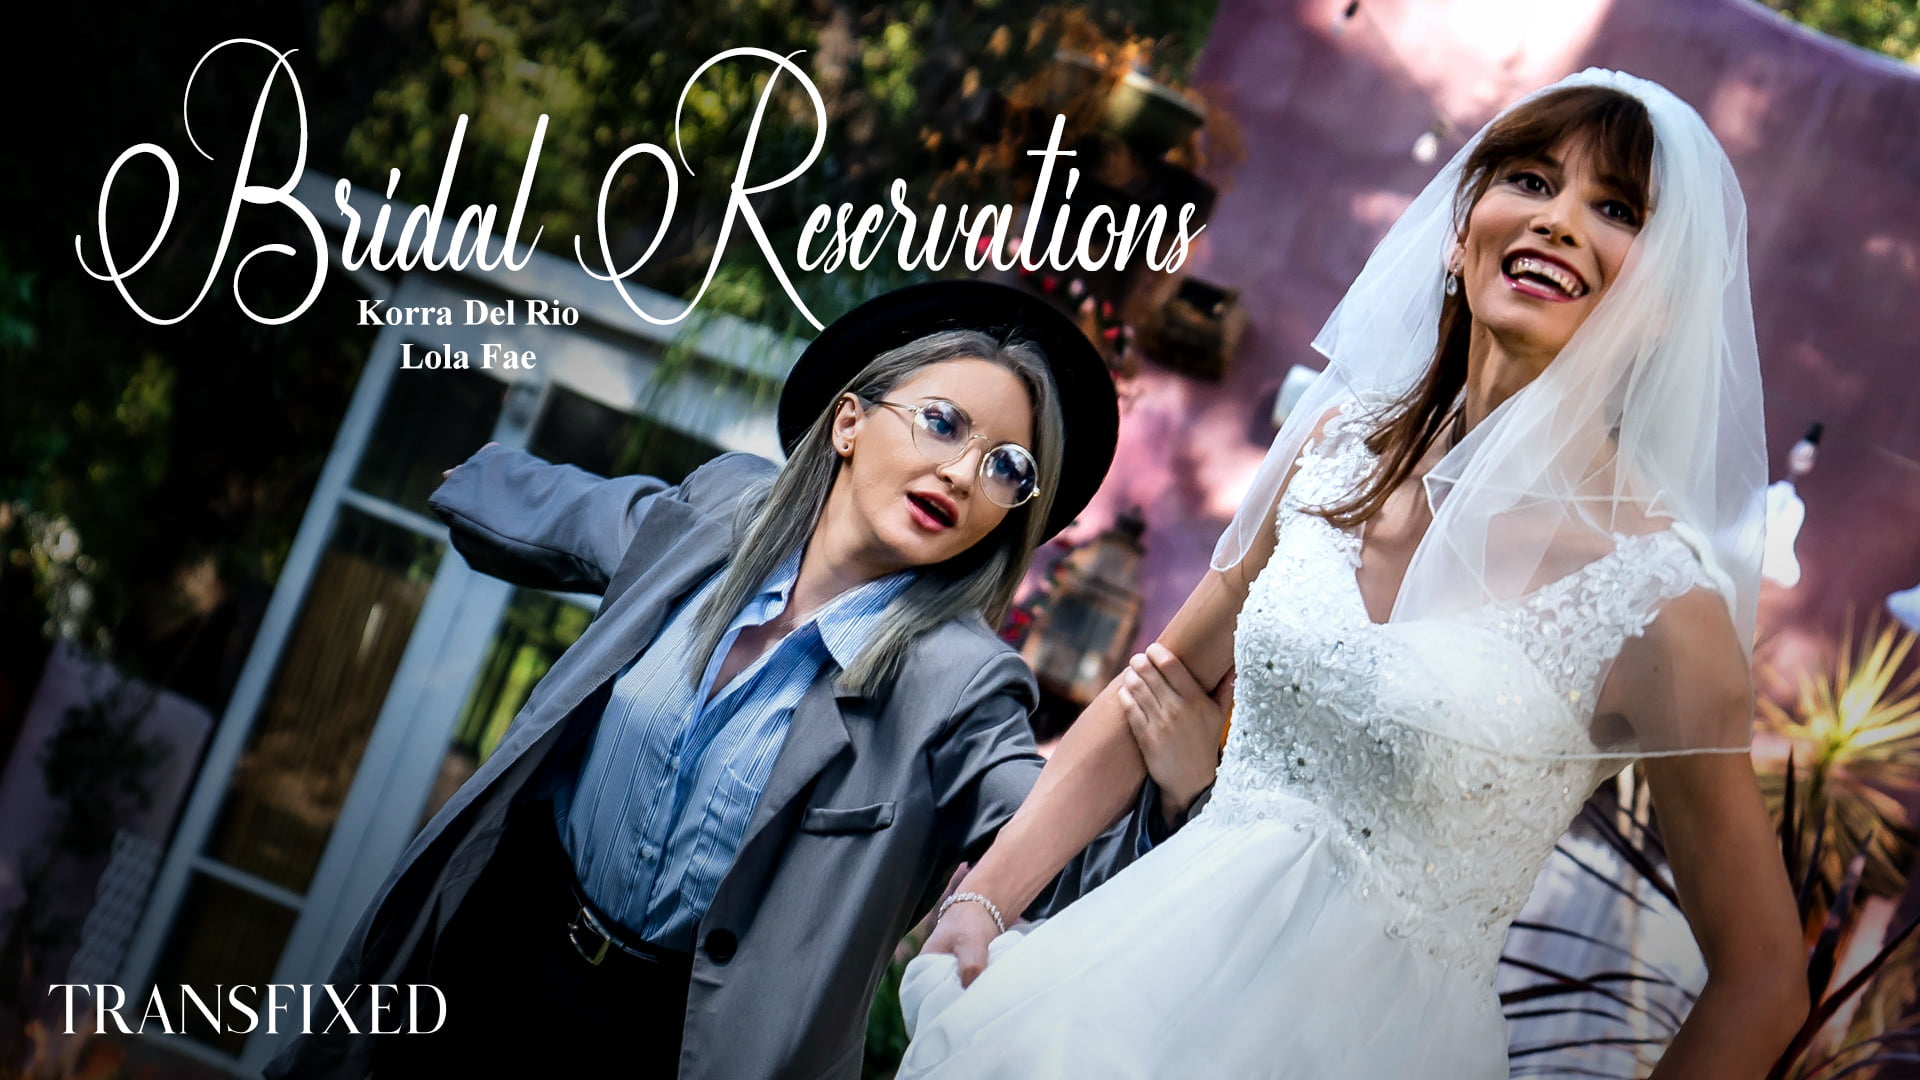 TransFixed &#8211; Korra del Rio And Lola Fae &#8211; Bridal Reservations, Perverzija.com